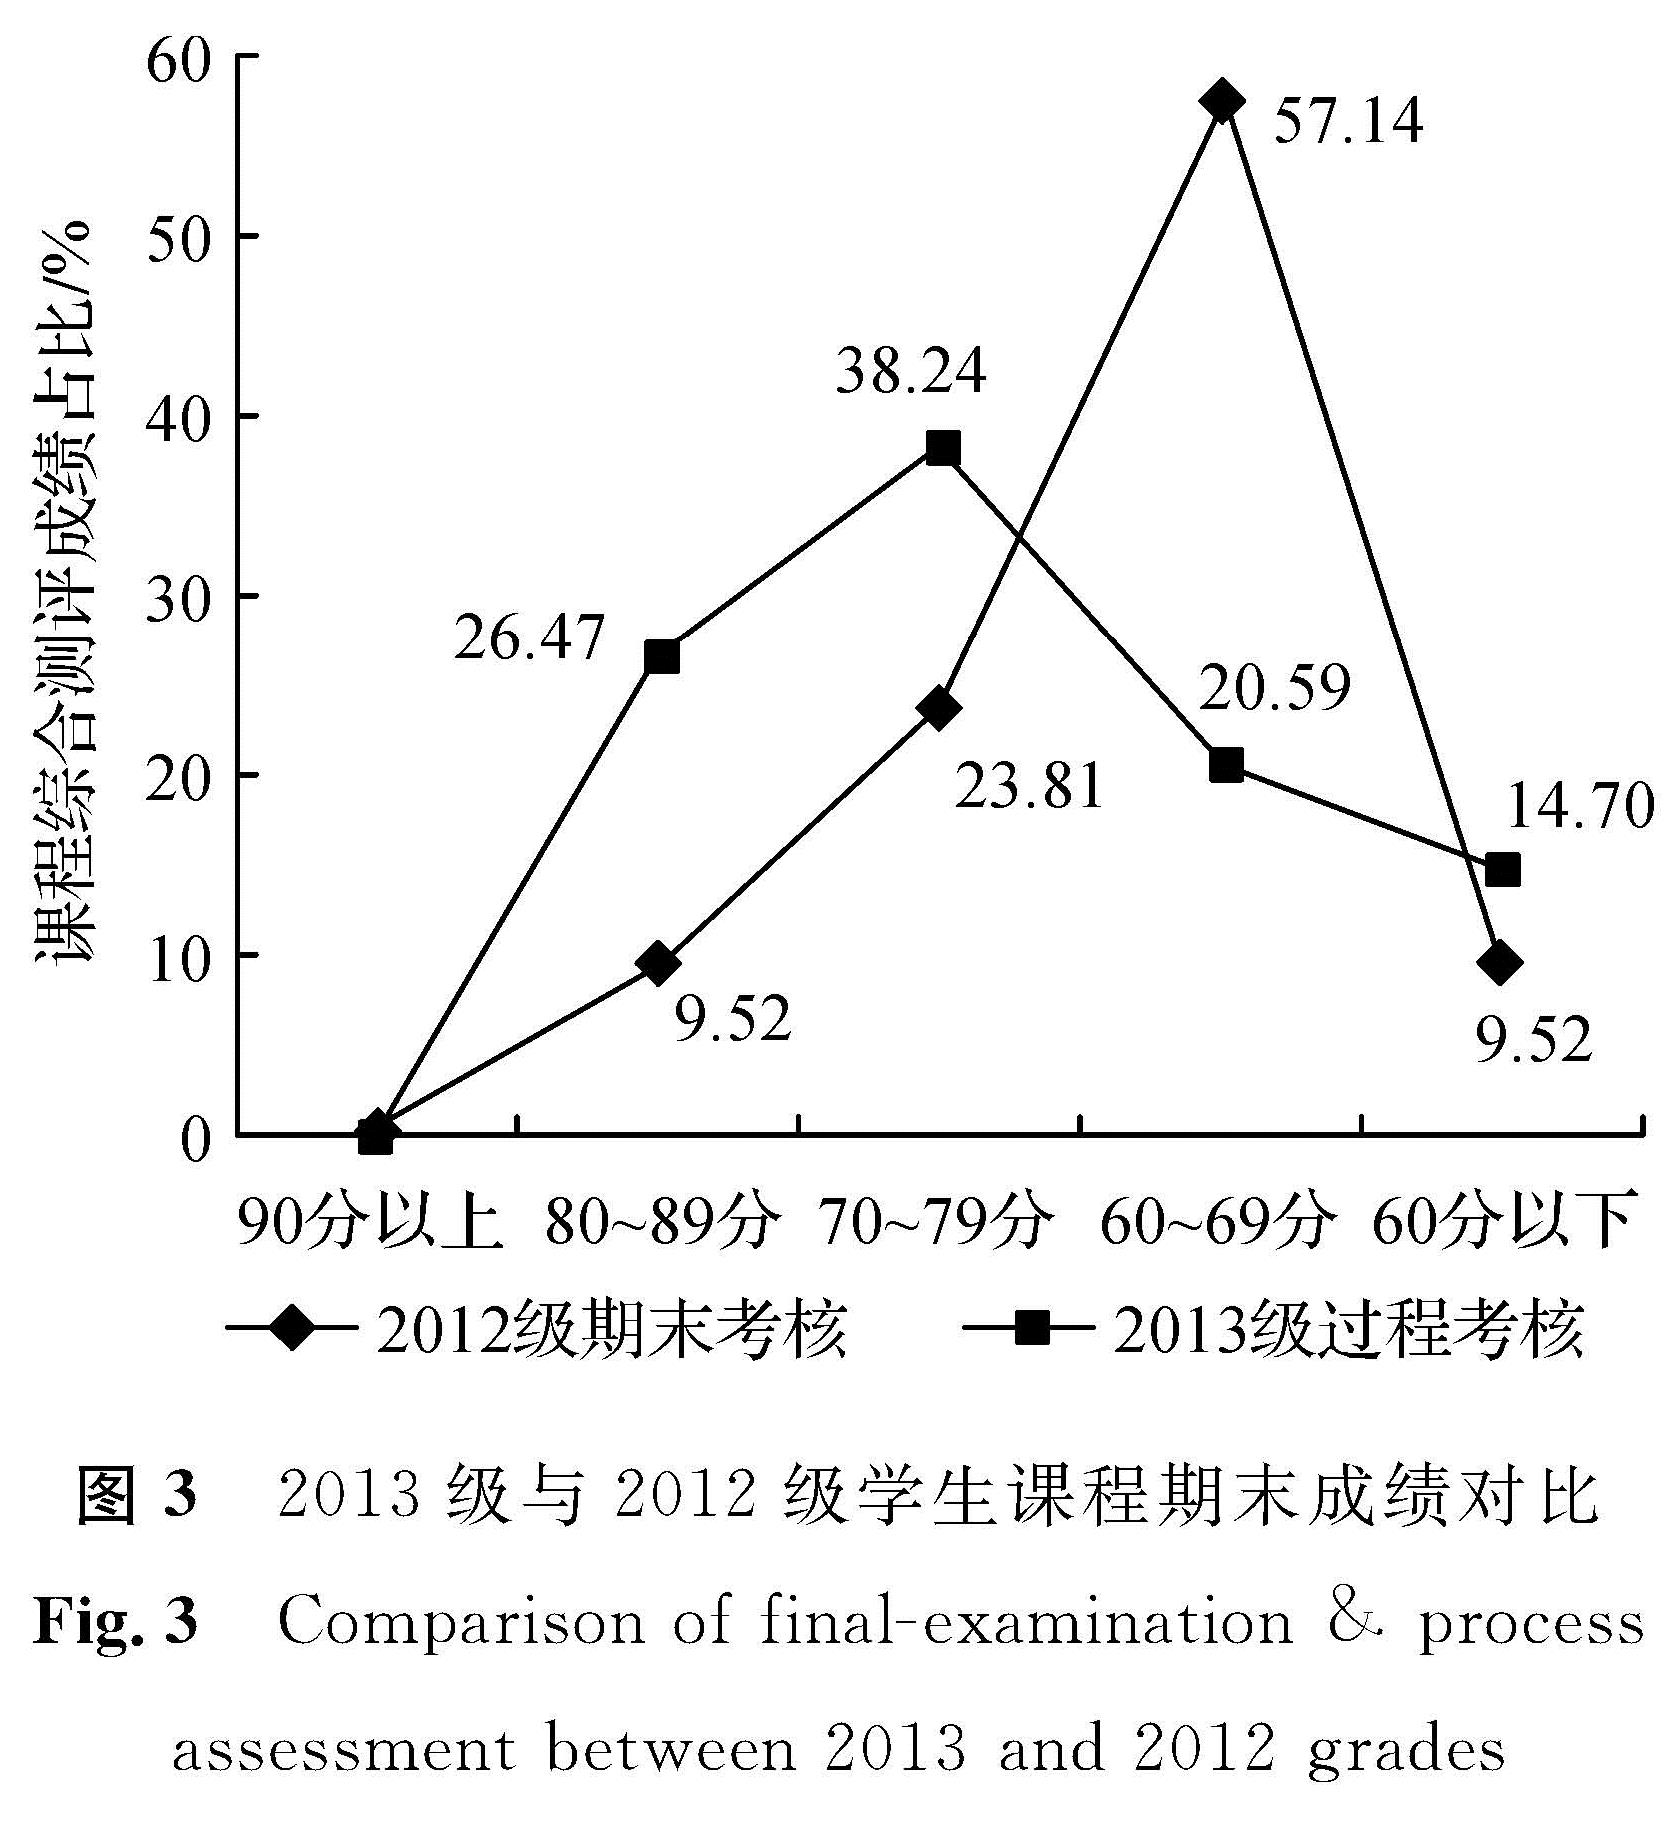 图3 2013级与2012级学生课程期末成绩对比<br/>Fig.3 Comparison of final-examination & process assessment between 2013 and 2012 grades